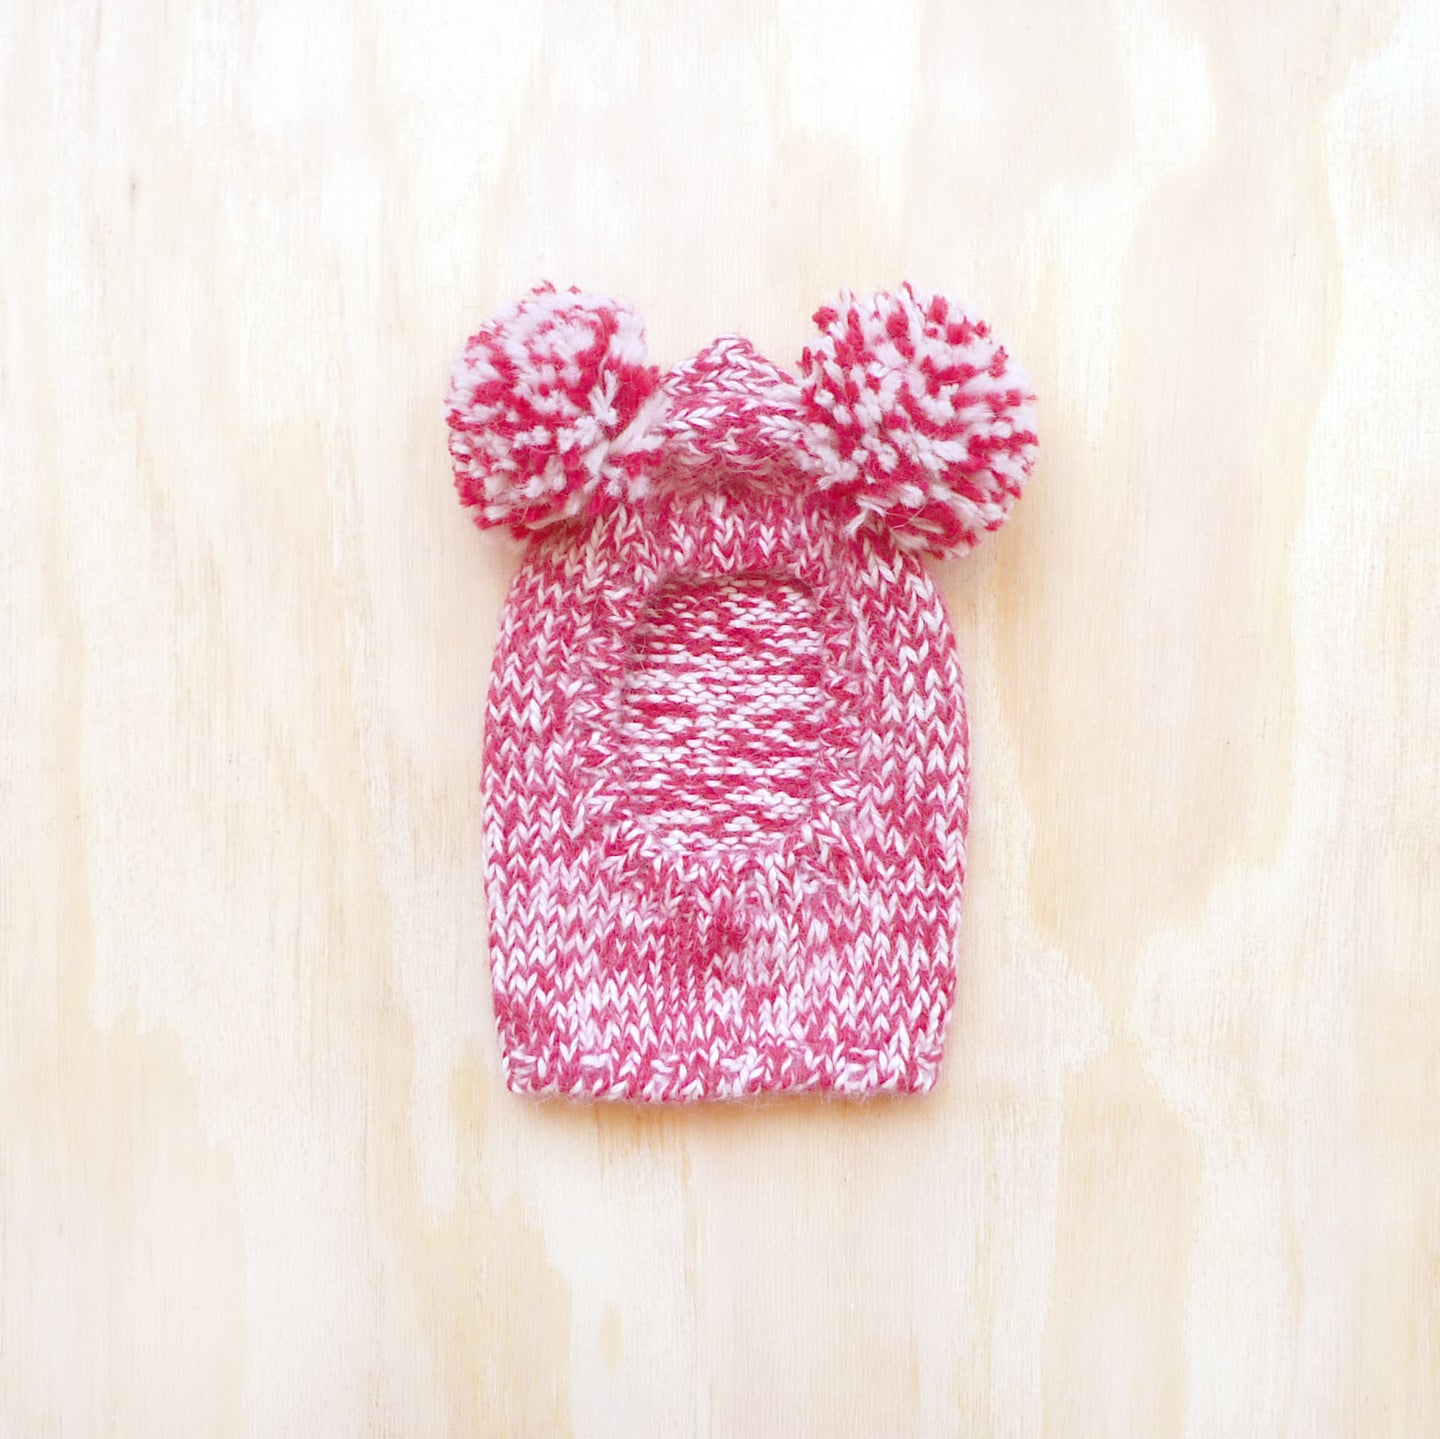 Pom Pom Sweater Hood -  Marled Cherry Pink